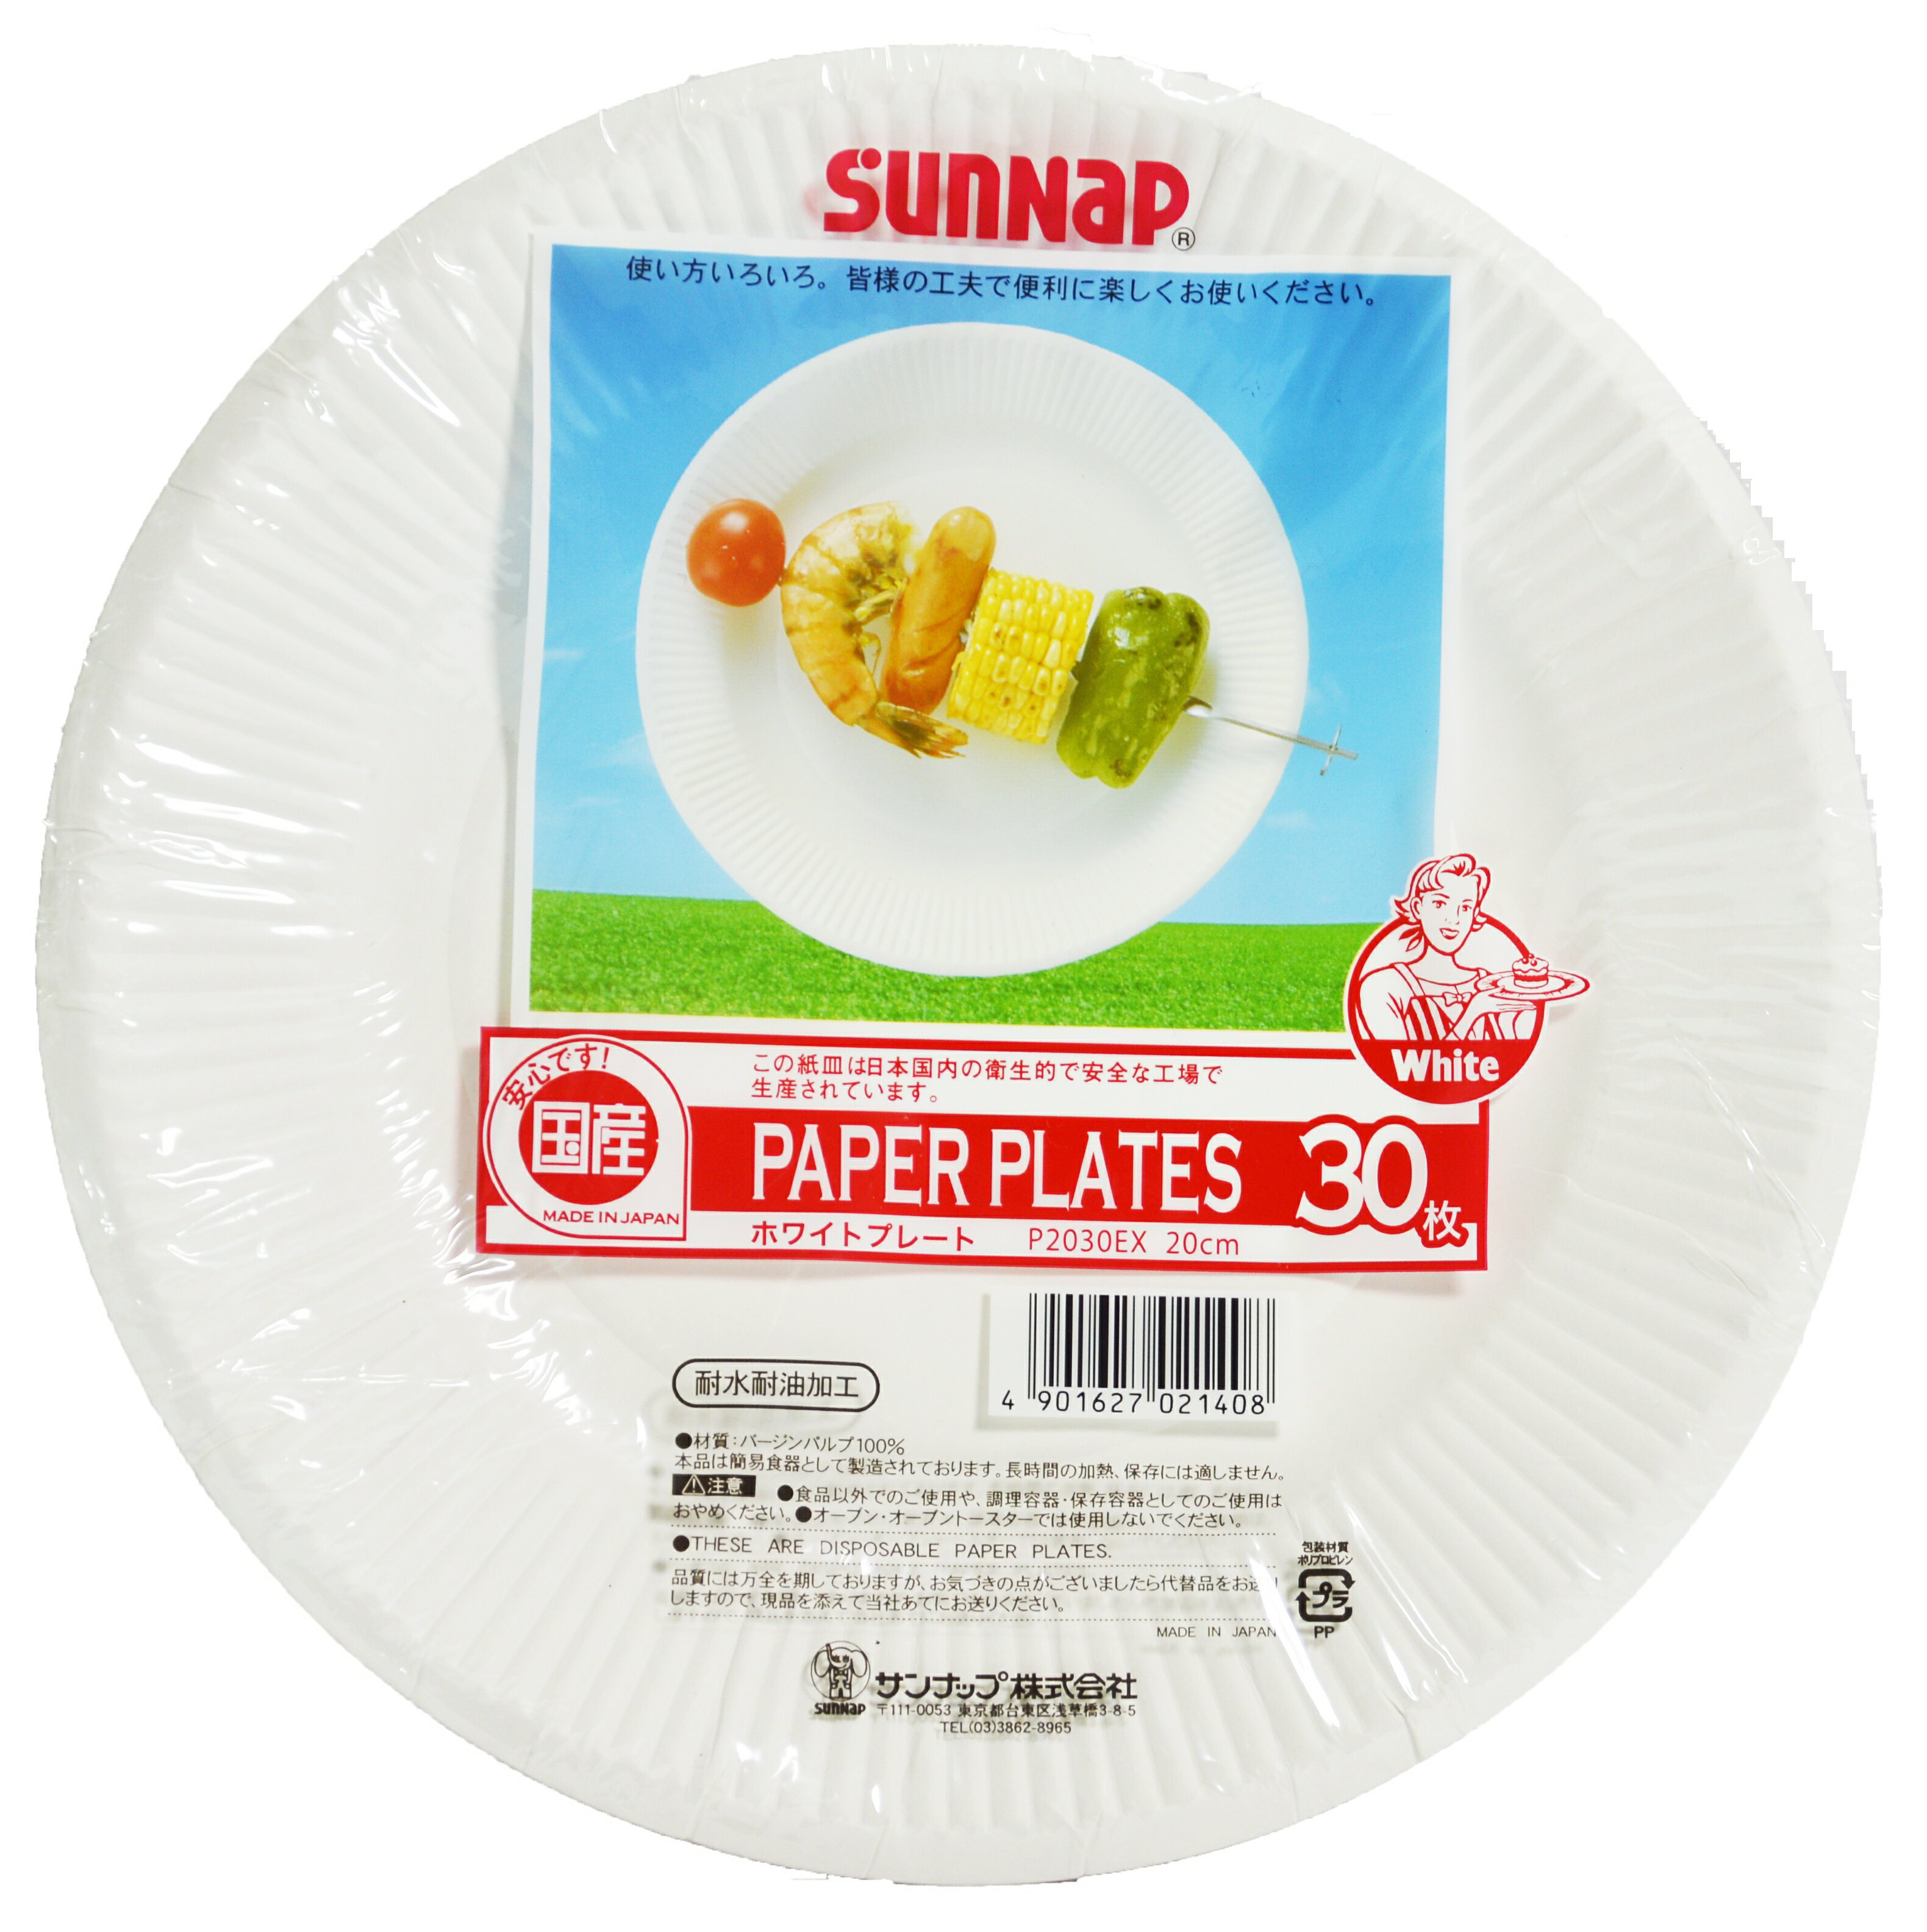 【皓龍國際】 SUNNAP 9吋環保紙盤 30入/包